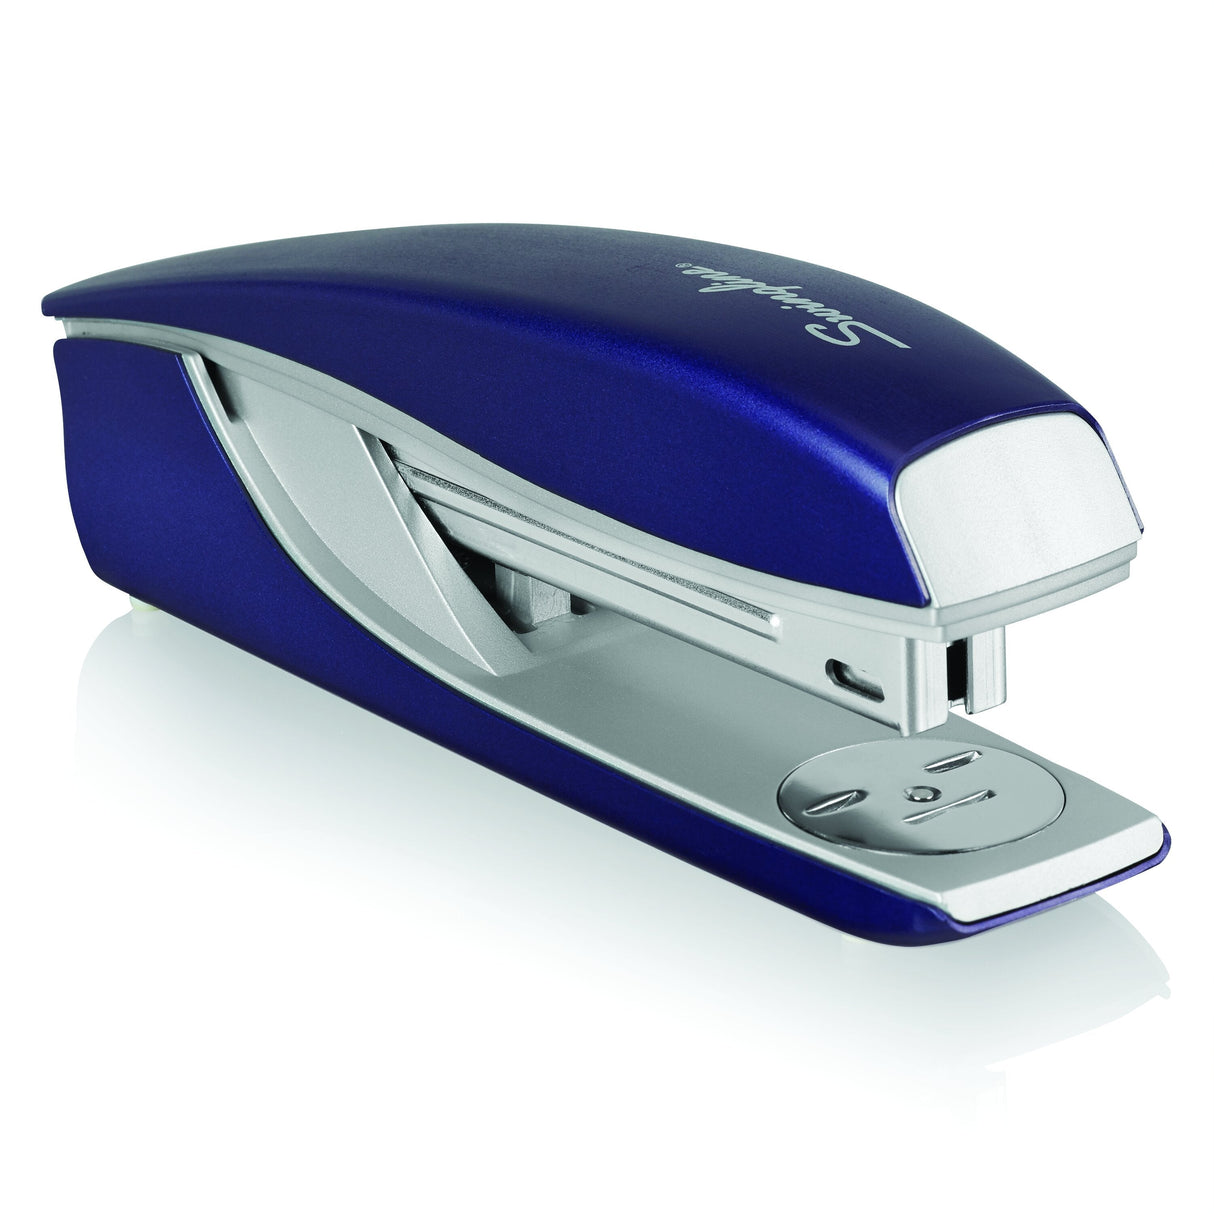 Swingline NeXXt Series Style Desktop Stapler, Blue - 40 Sheets, Top-Loading